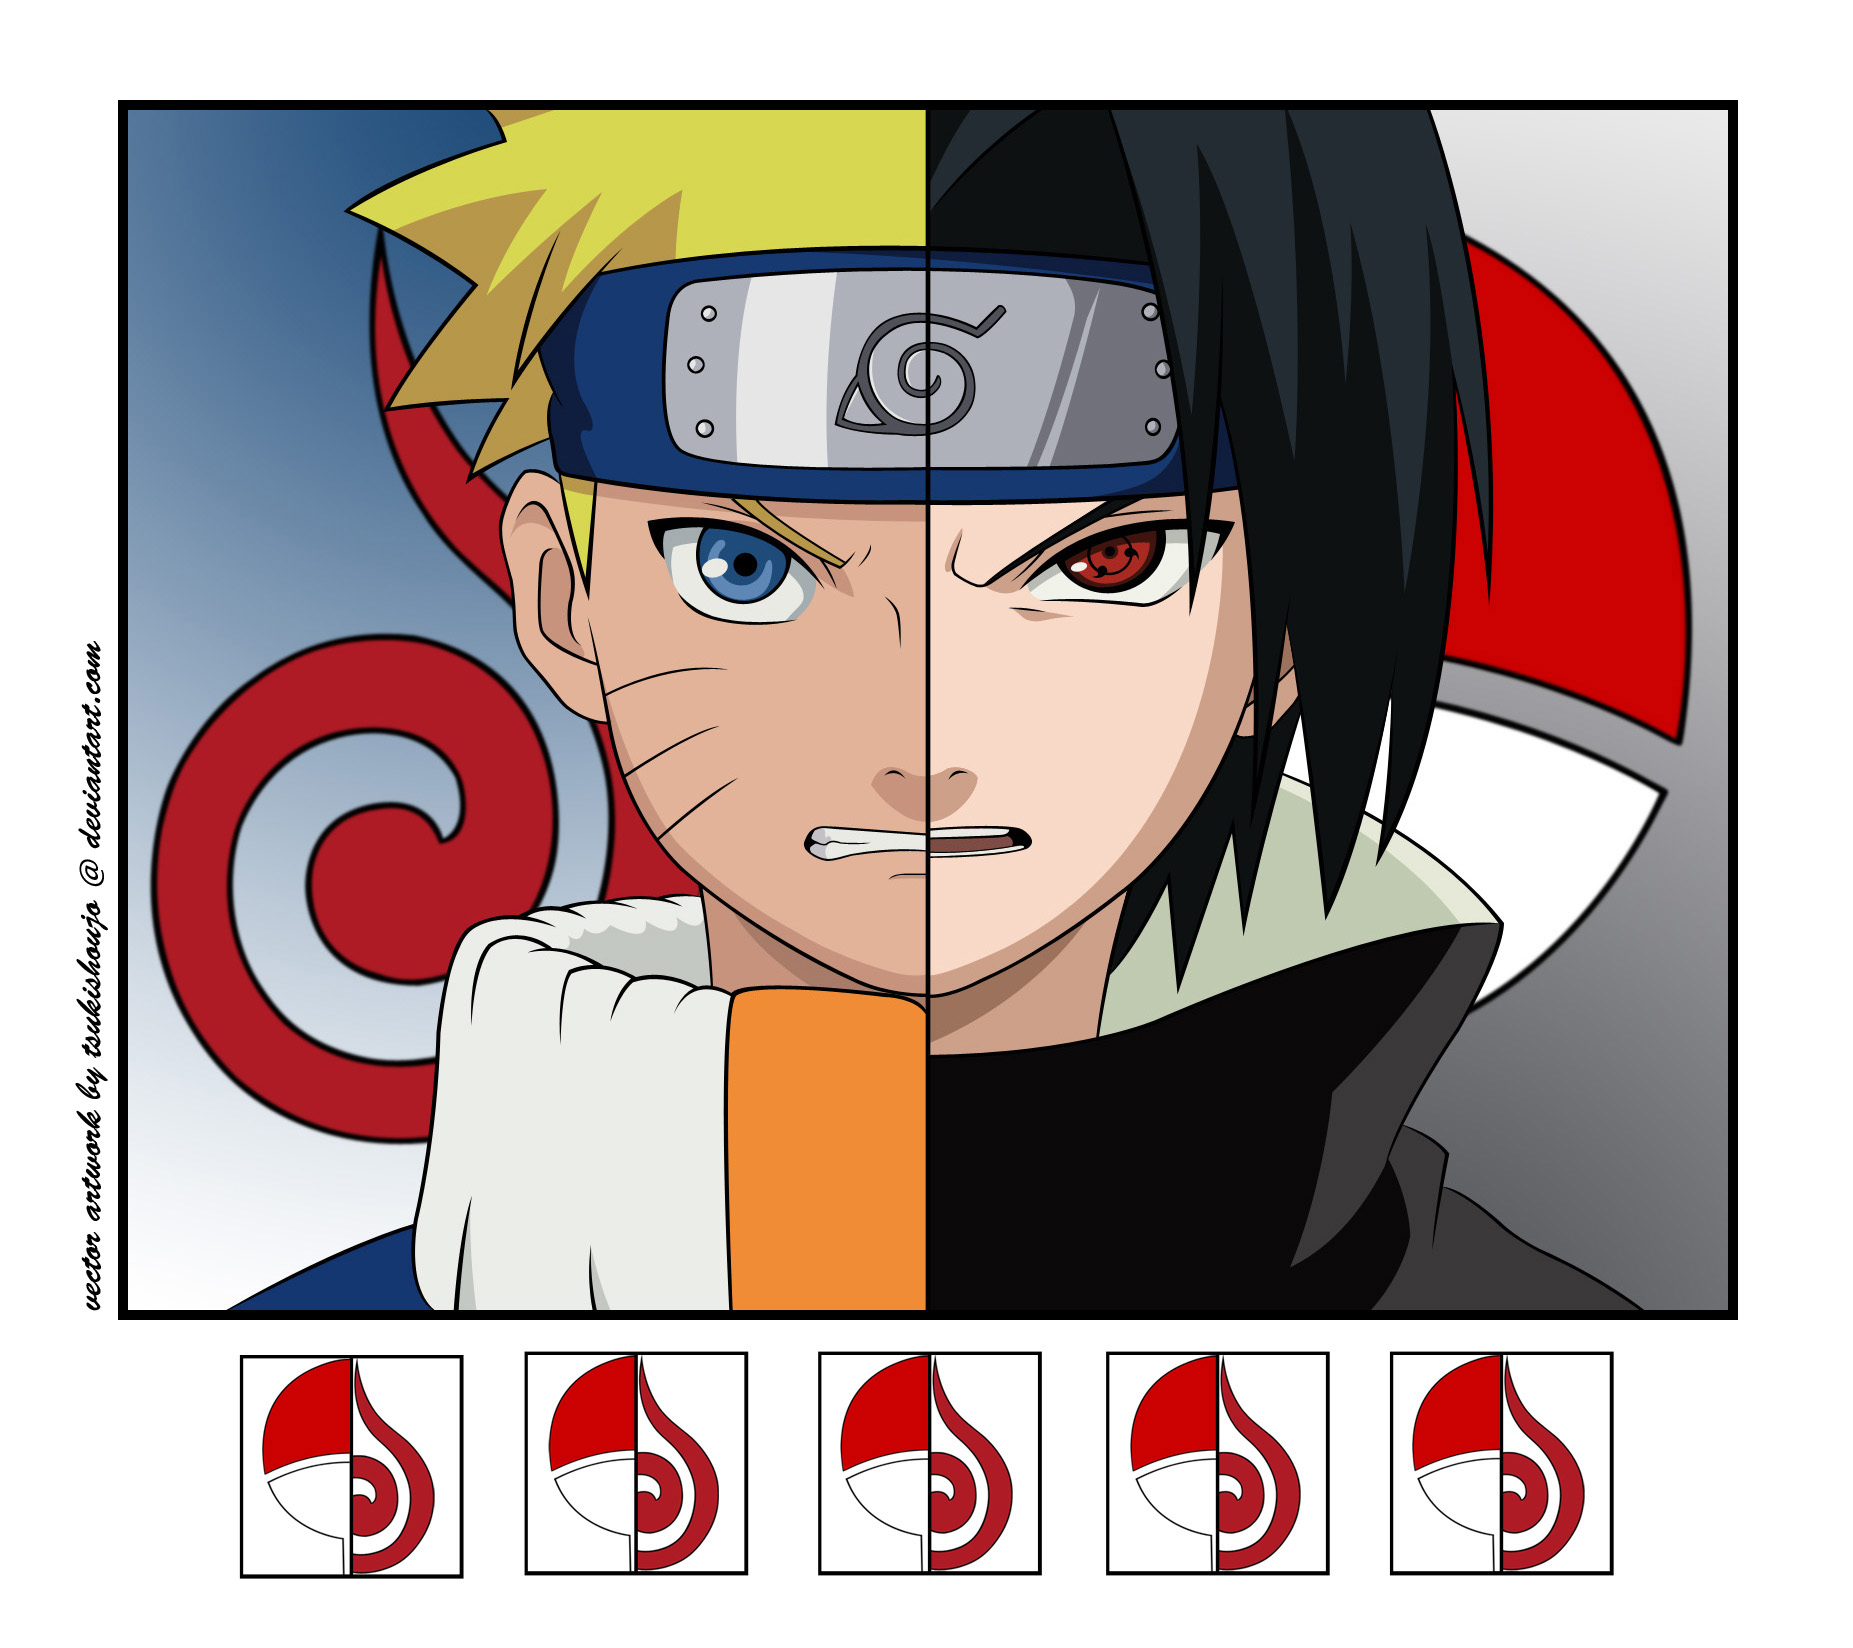 Naruto_vs_Sasuke_by_tsukishoujo.jpg